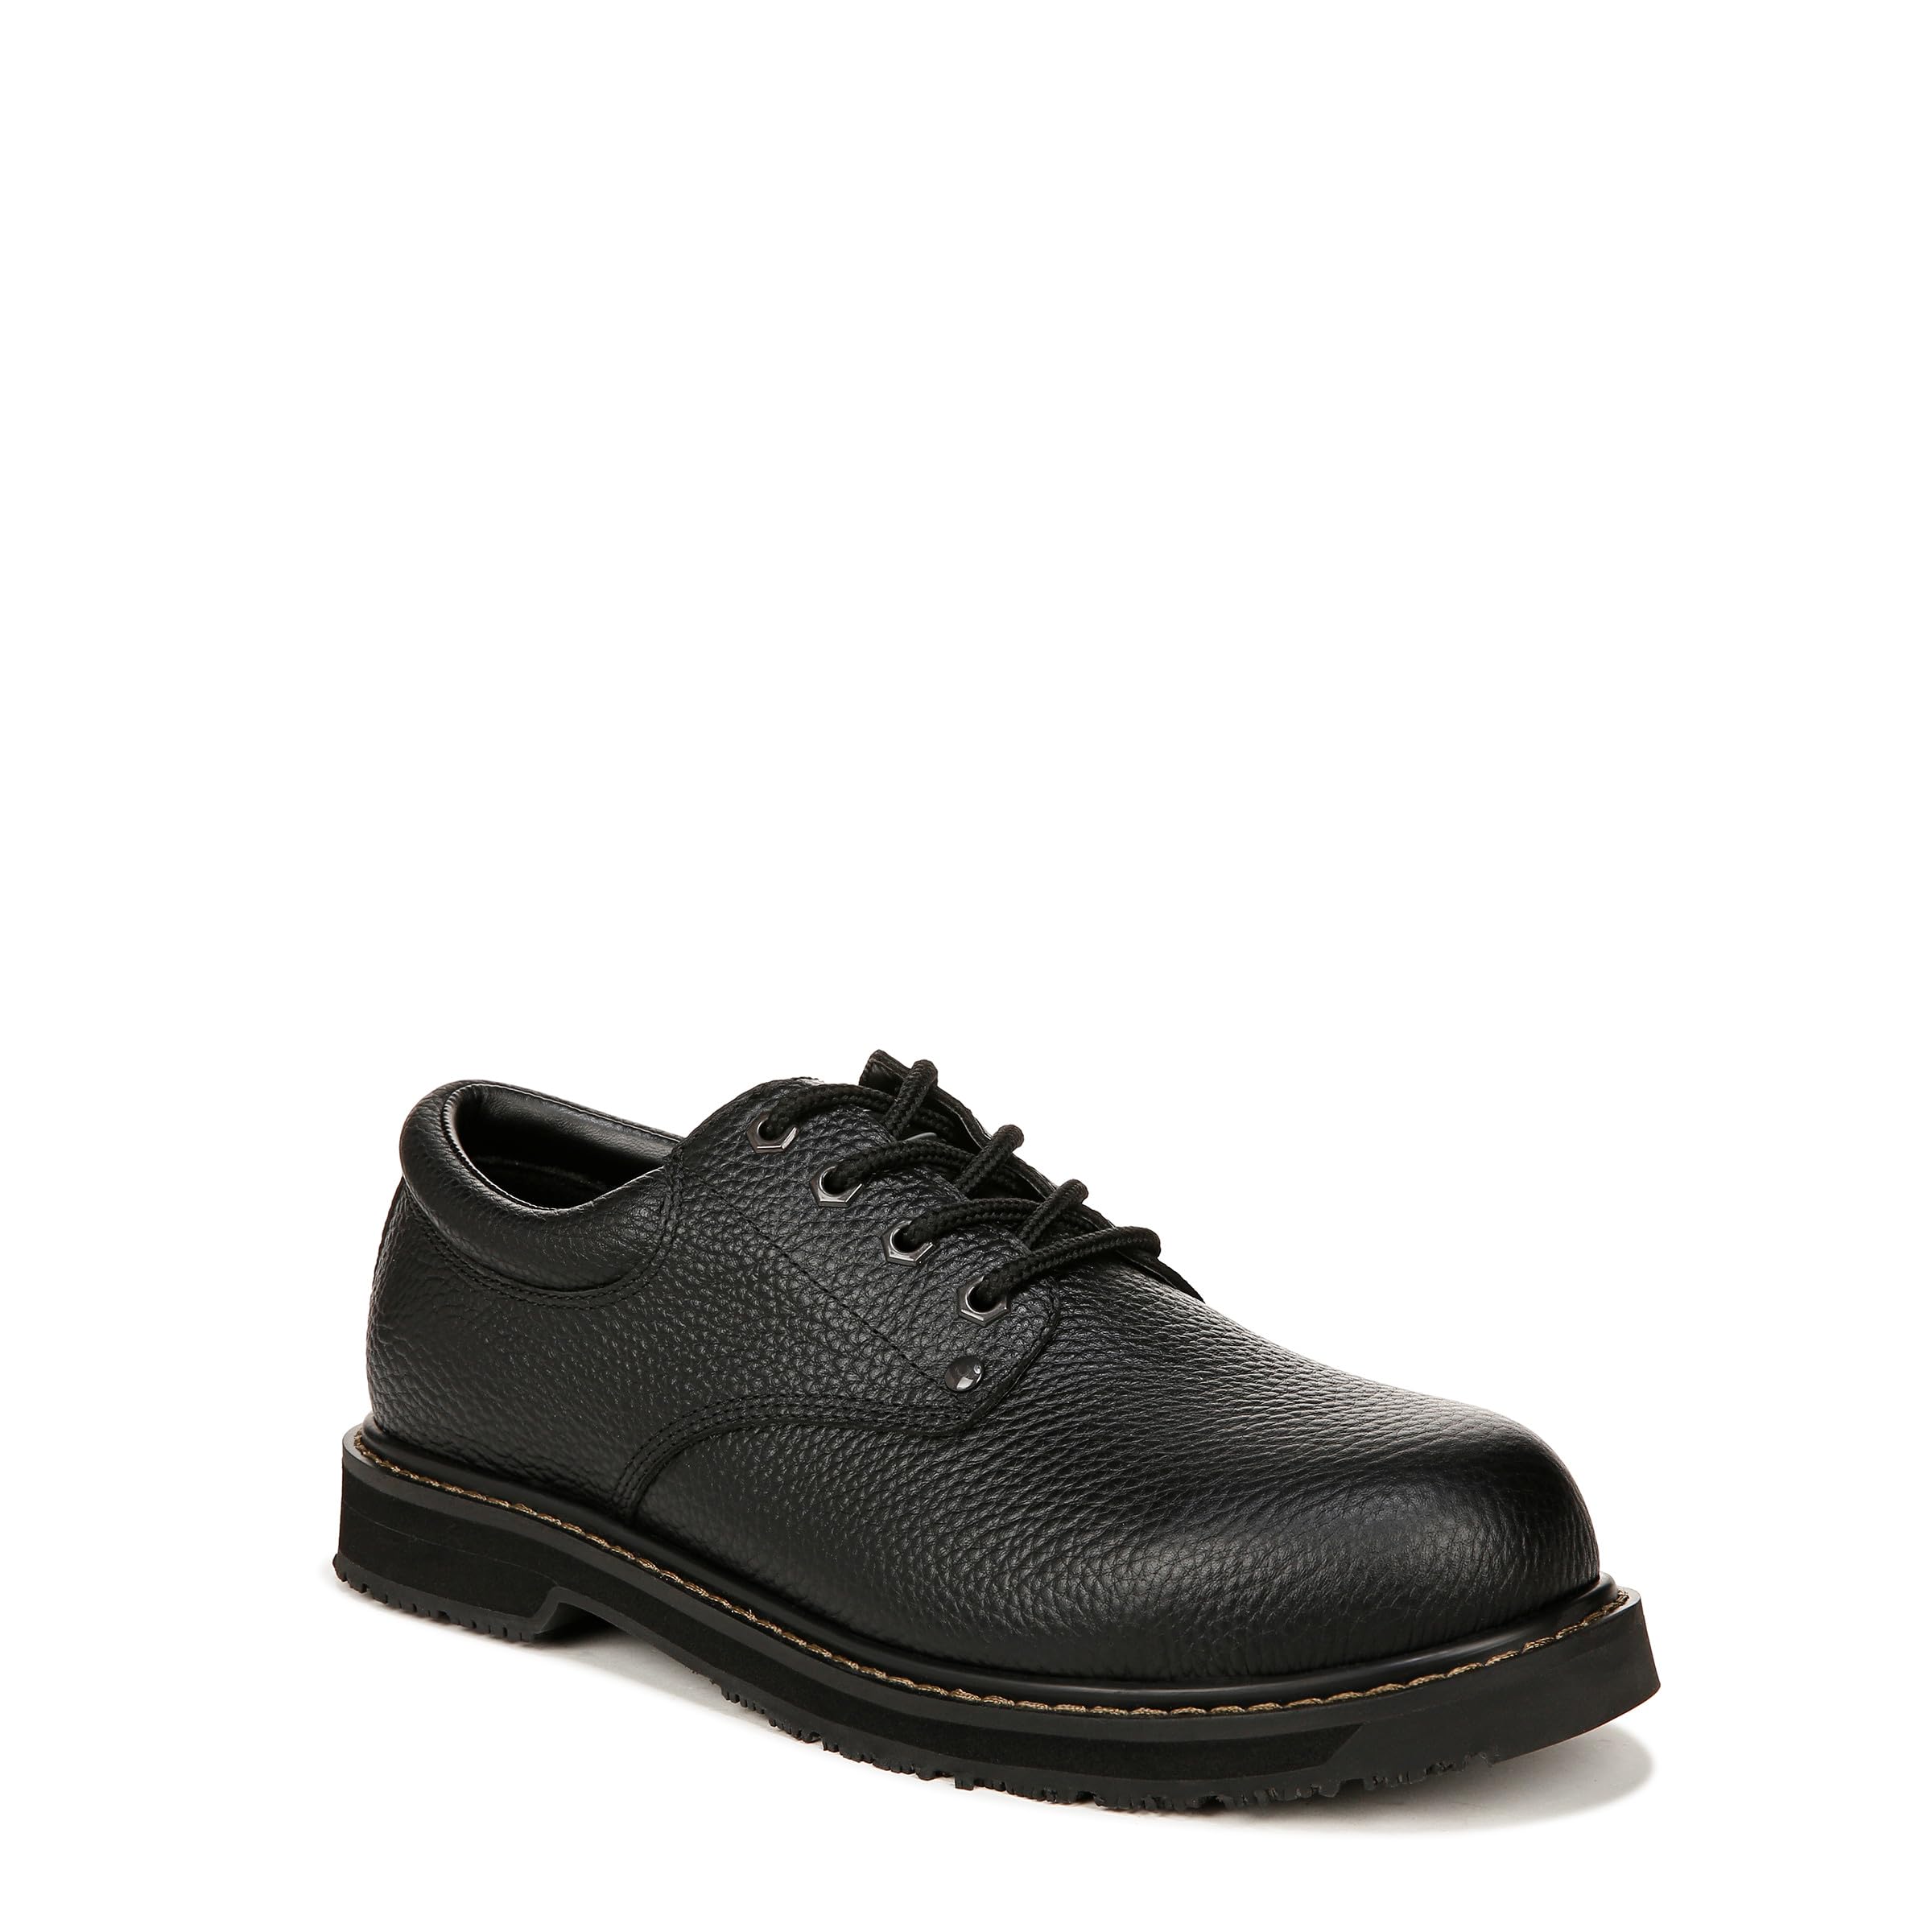 Dr. Scholl's Shoes Men's Harrington Composite Toe Work Oxford Food Service Shoe